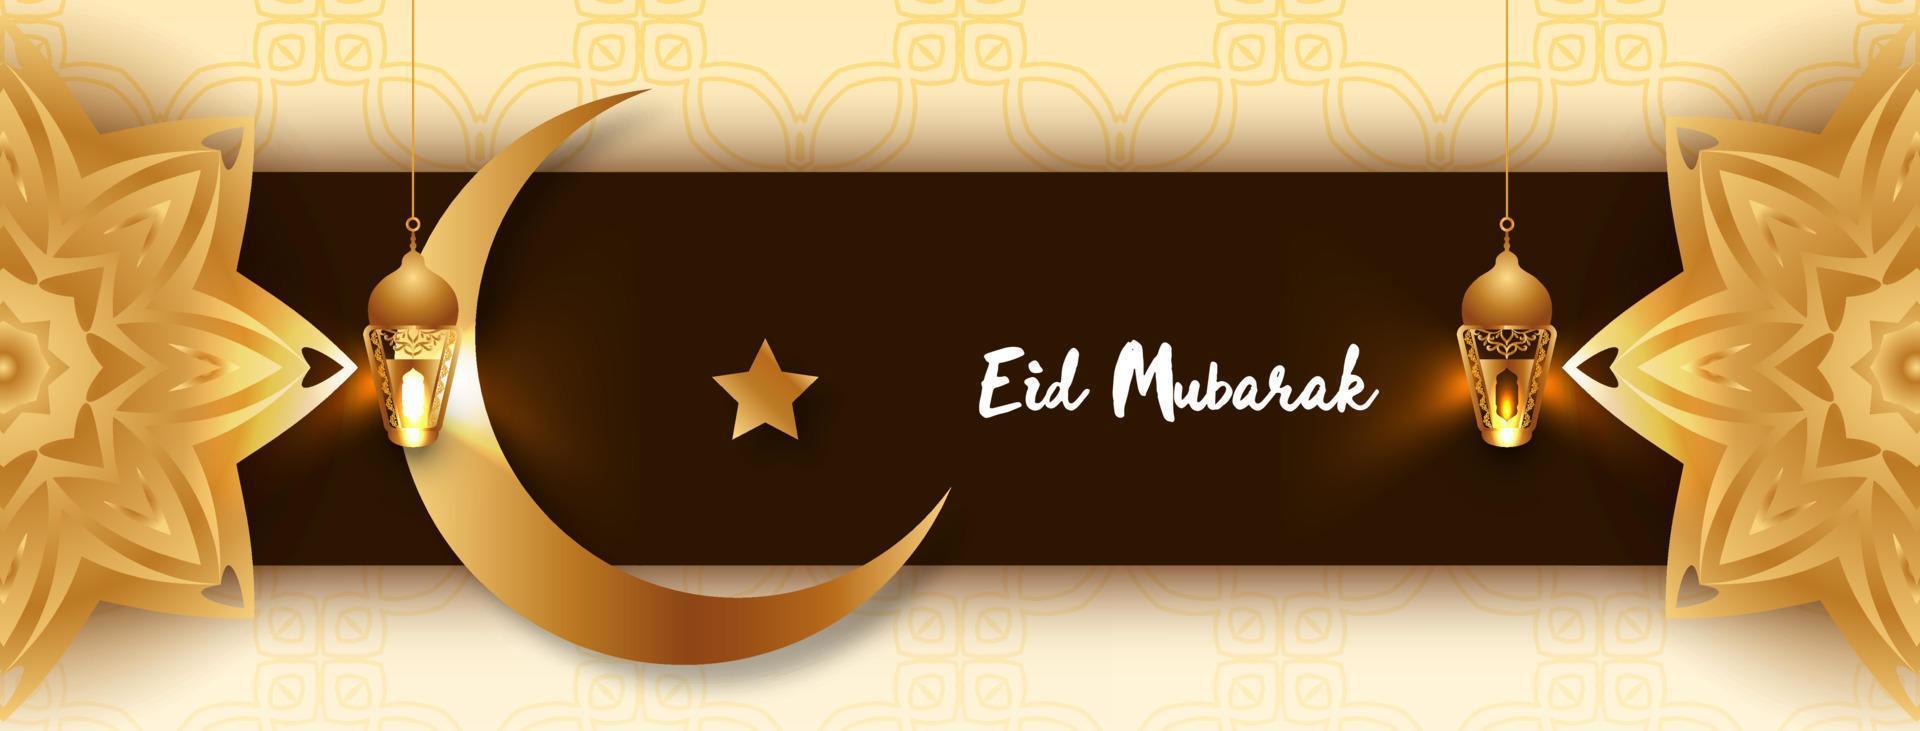 eid mubarak traditionnel Festival islamique bannière conception vecteur